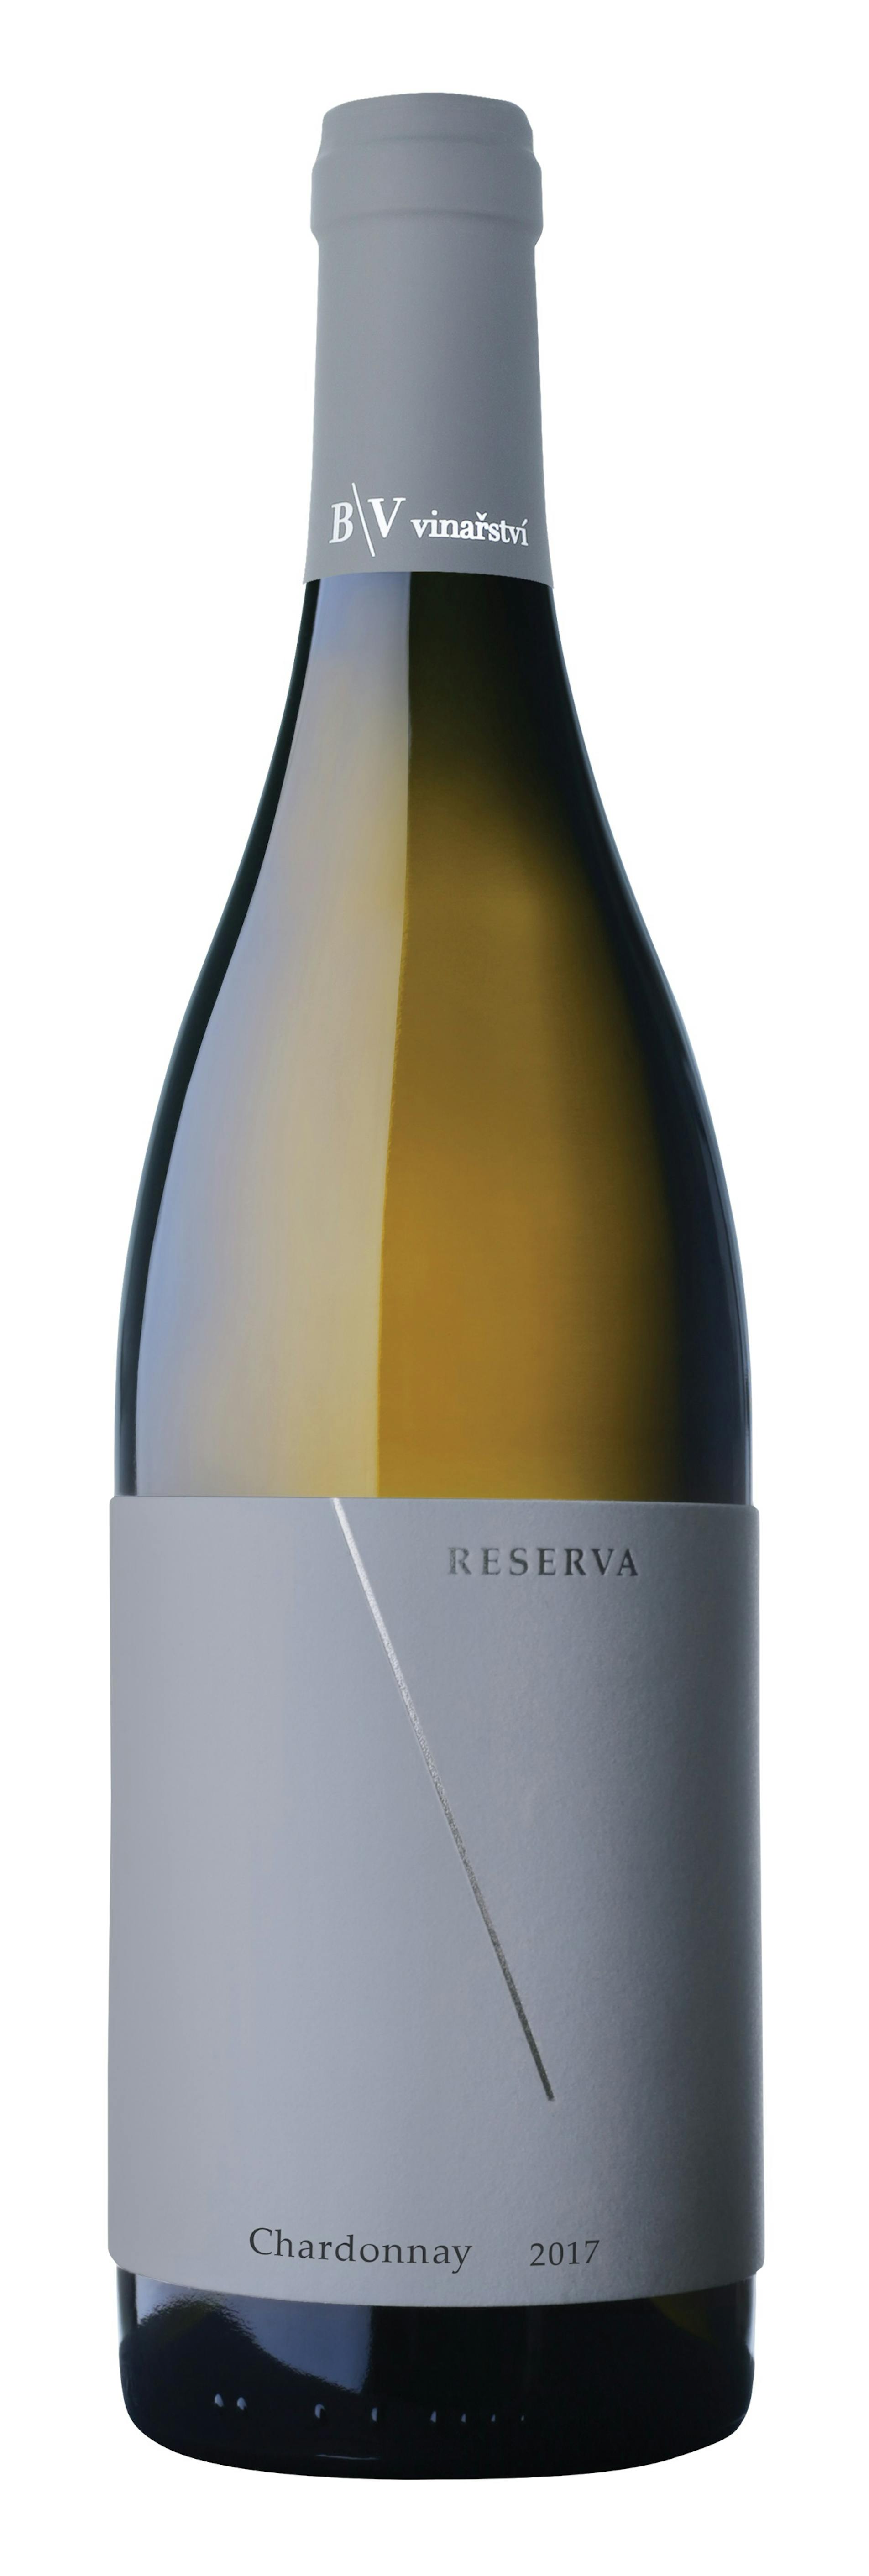 Chardonnay RESERVA 2017, pozdní sběr z B\V vinařství